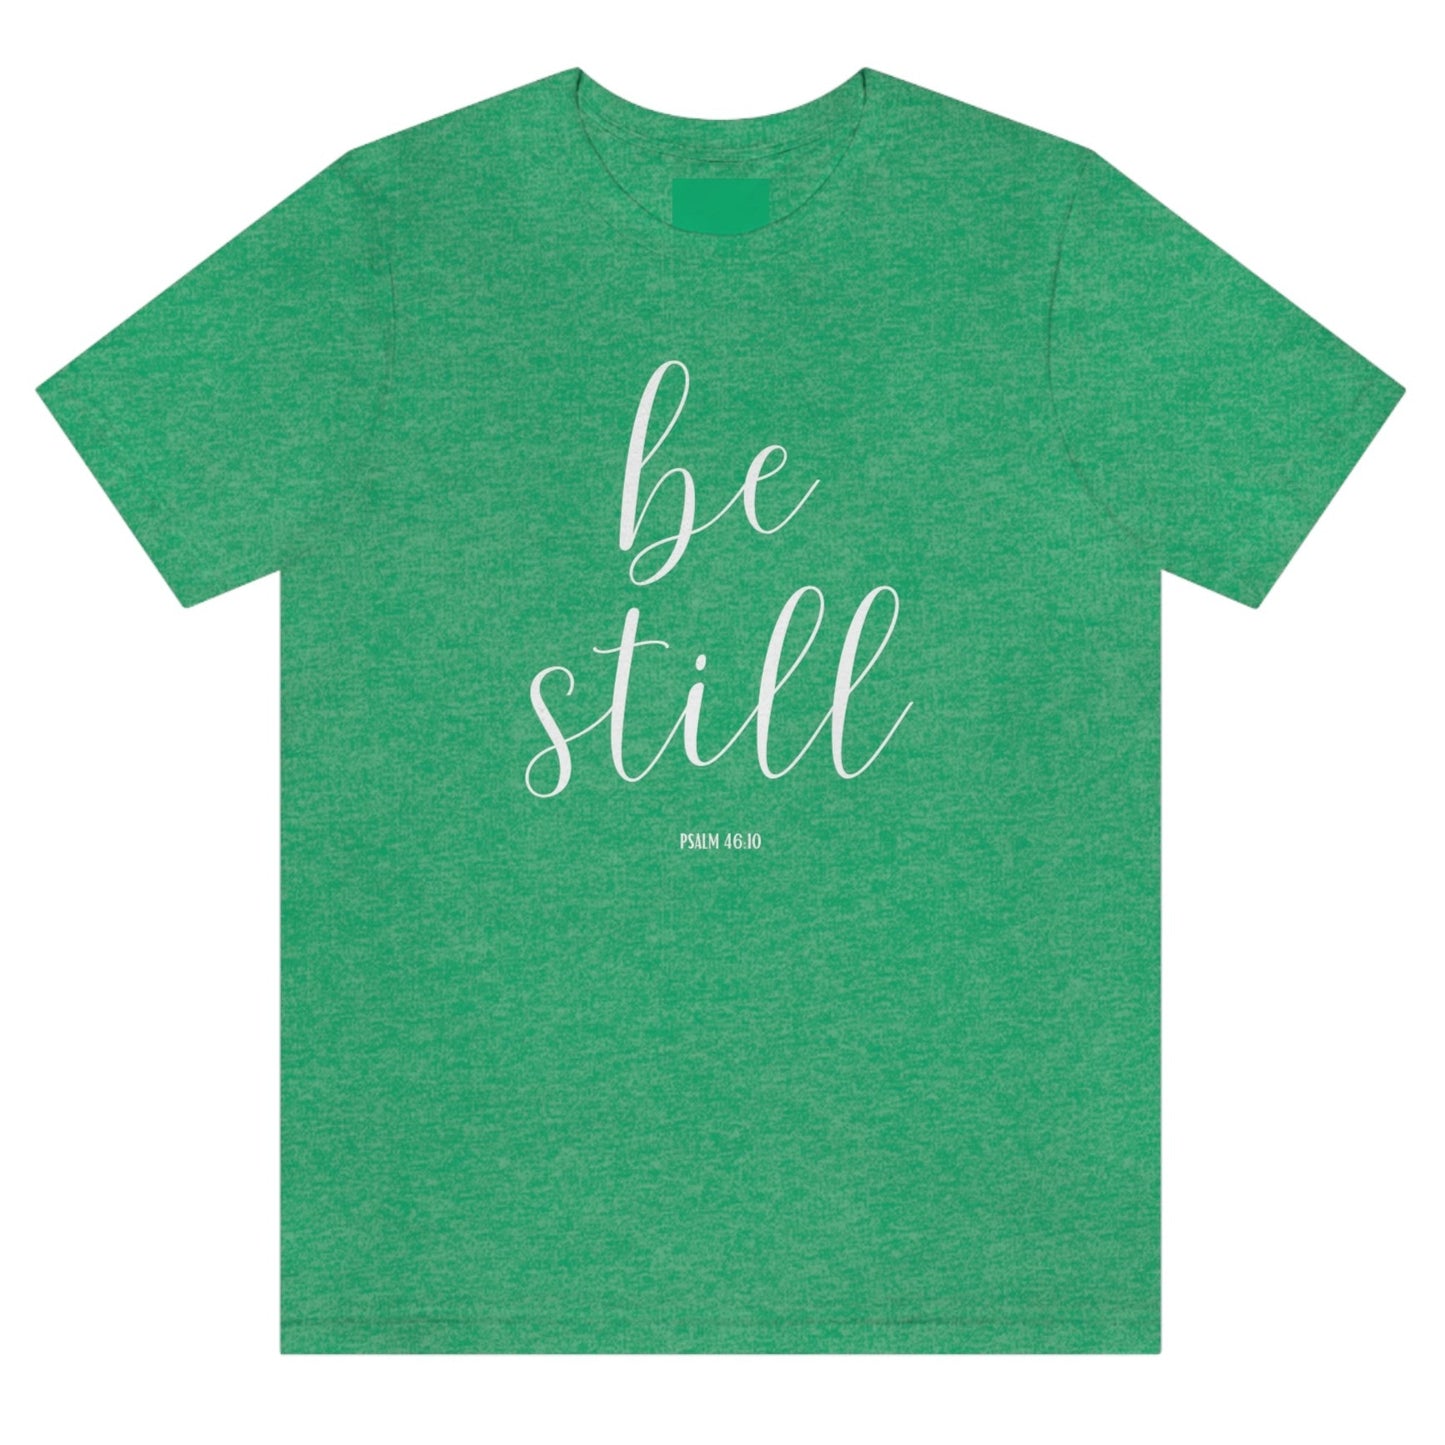 be-still-psalm-46-10-heather-kelly-green-t-shirt-womens-christian-inspiring